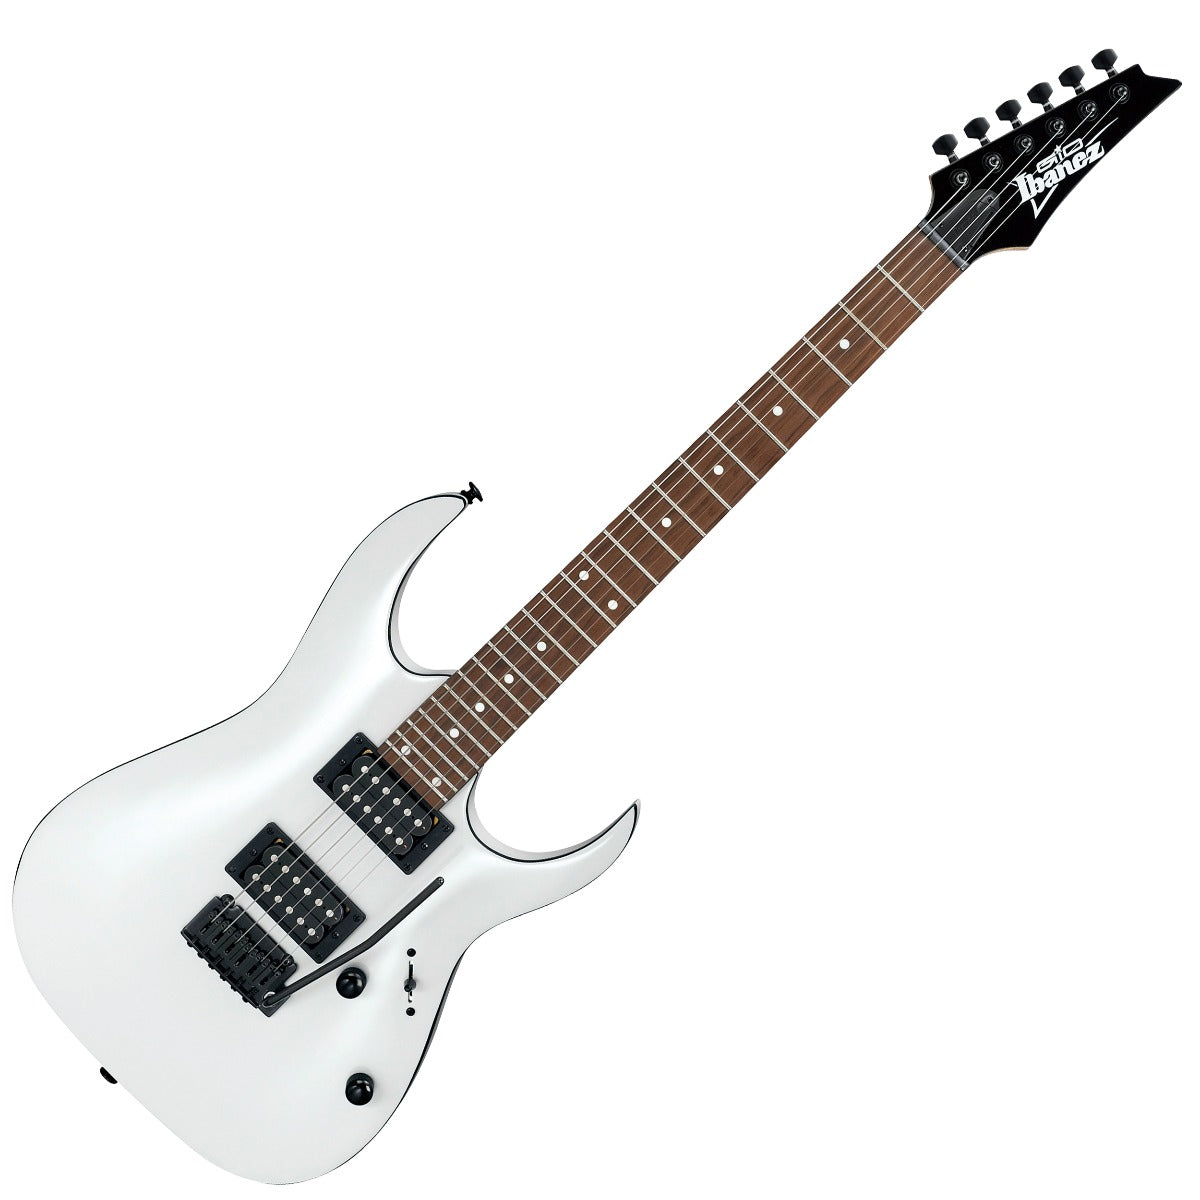 Ibanez GRGA120 Electric Guitar - White